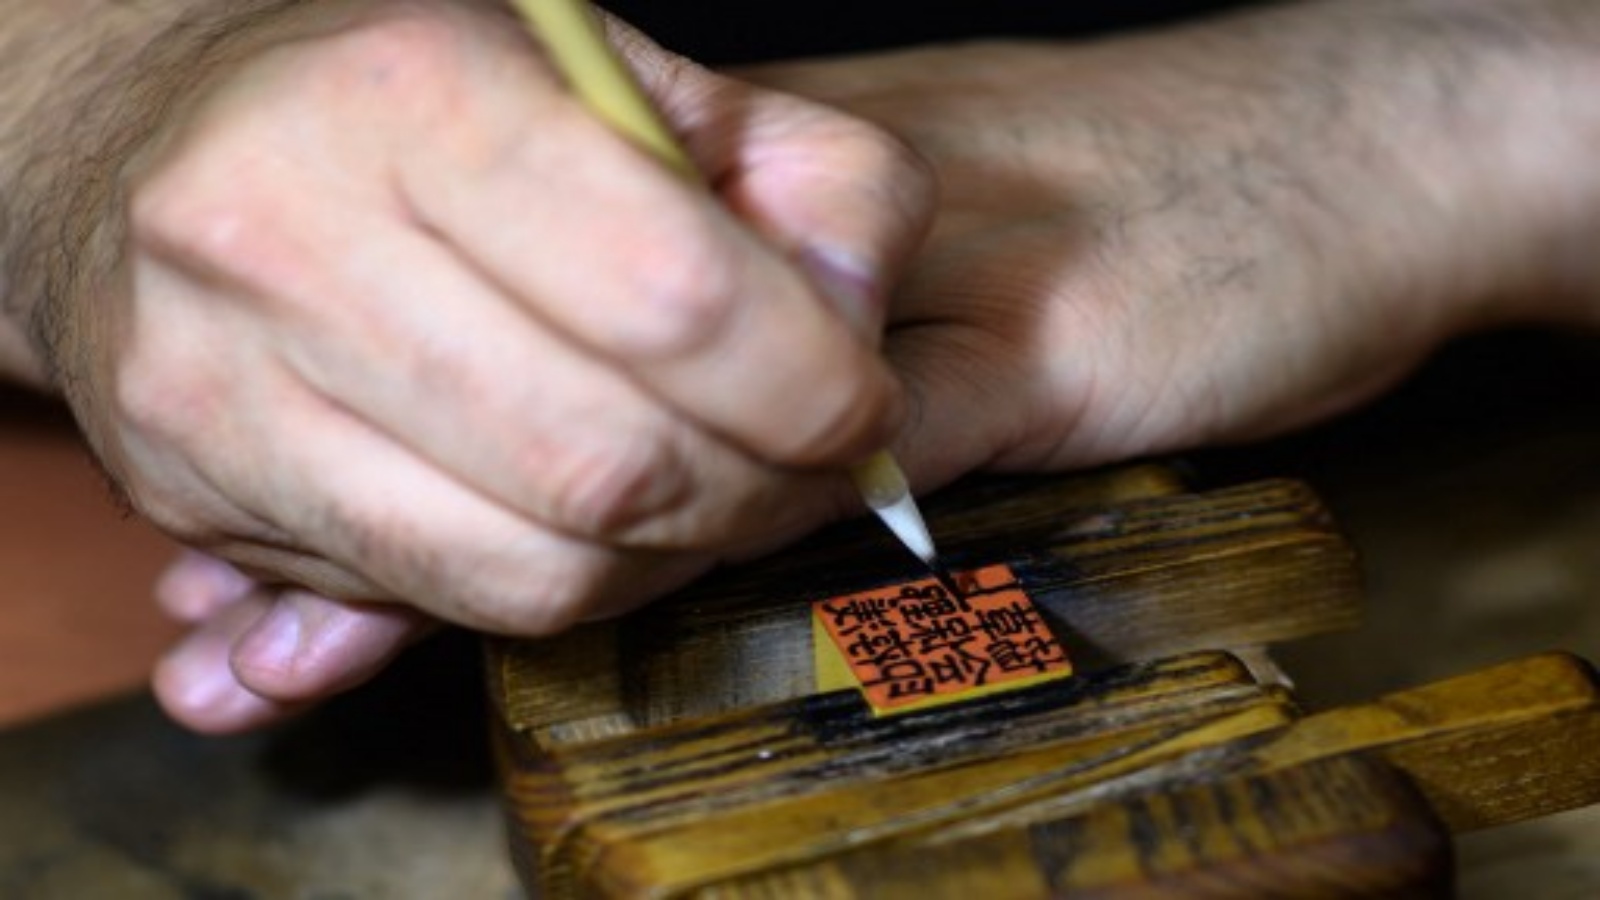  صانع ختم الحبر التقليدي تاكاهيرو ماكينو 44 عامًا وهو يكتب شخصيات على هانكو في استوديو في طوكيو.